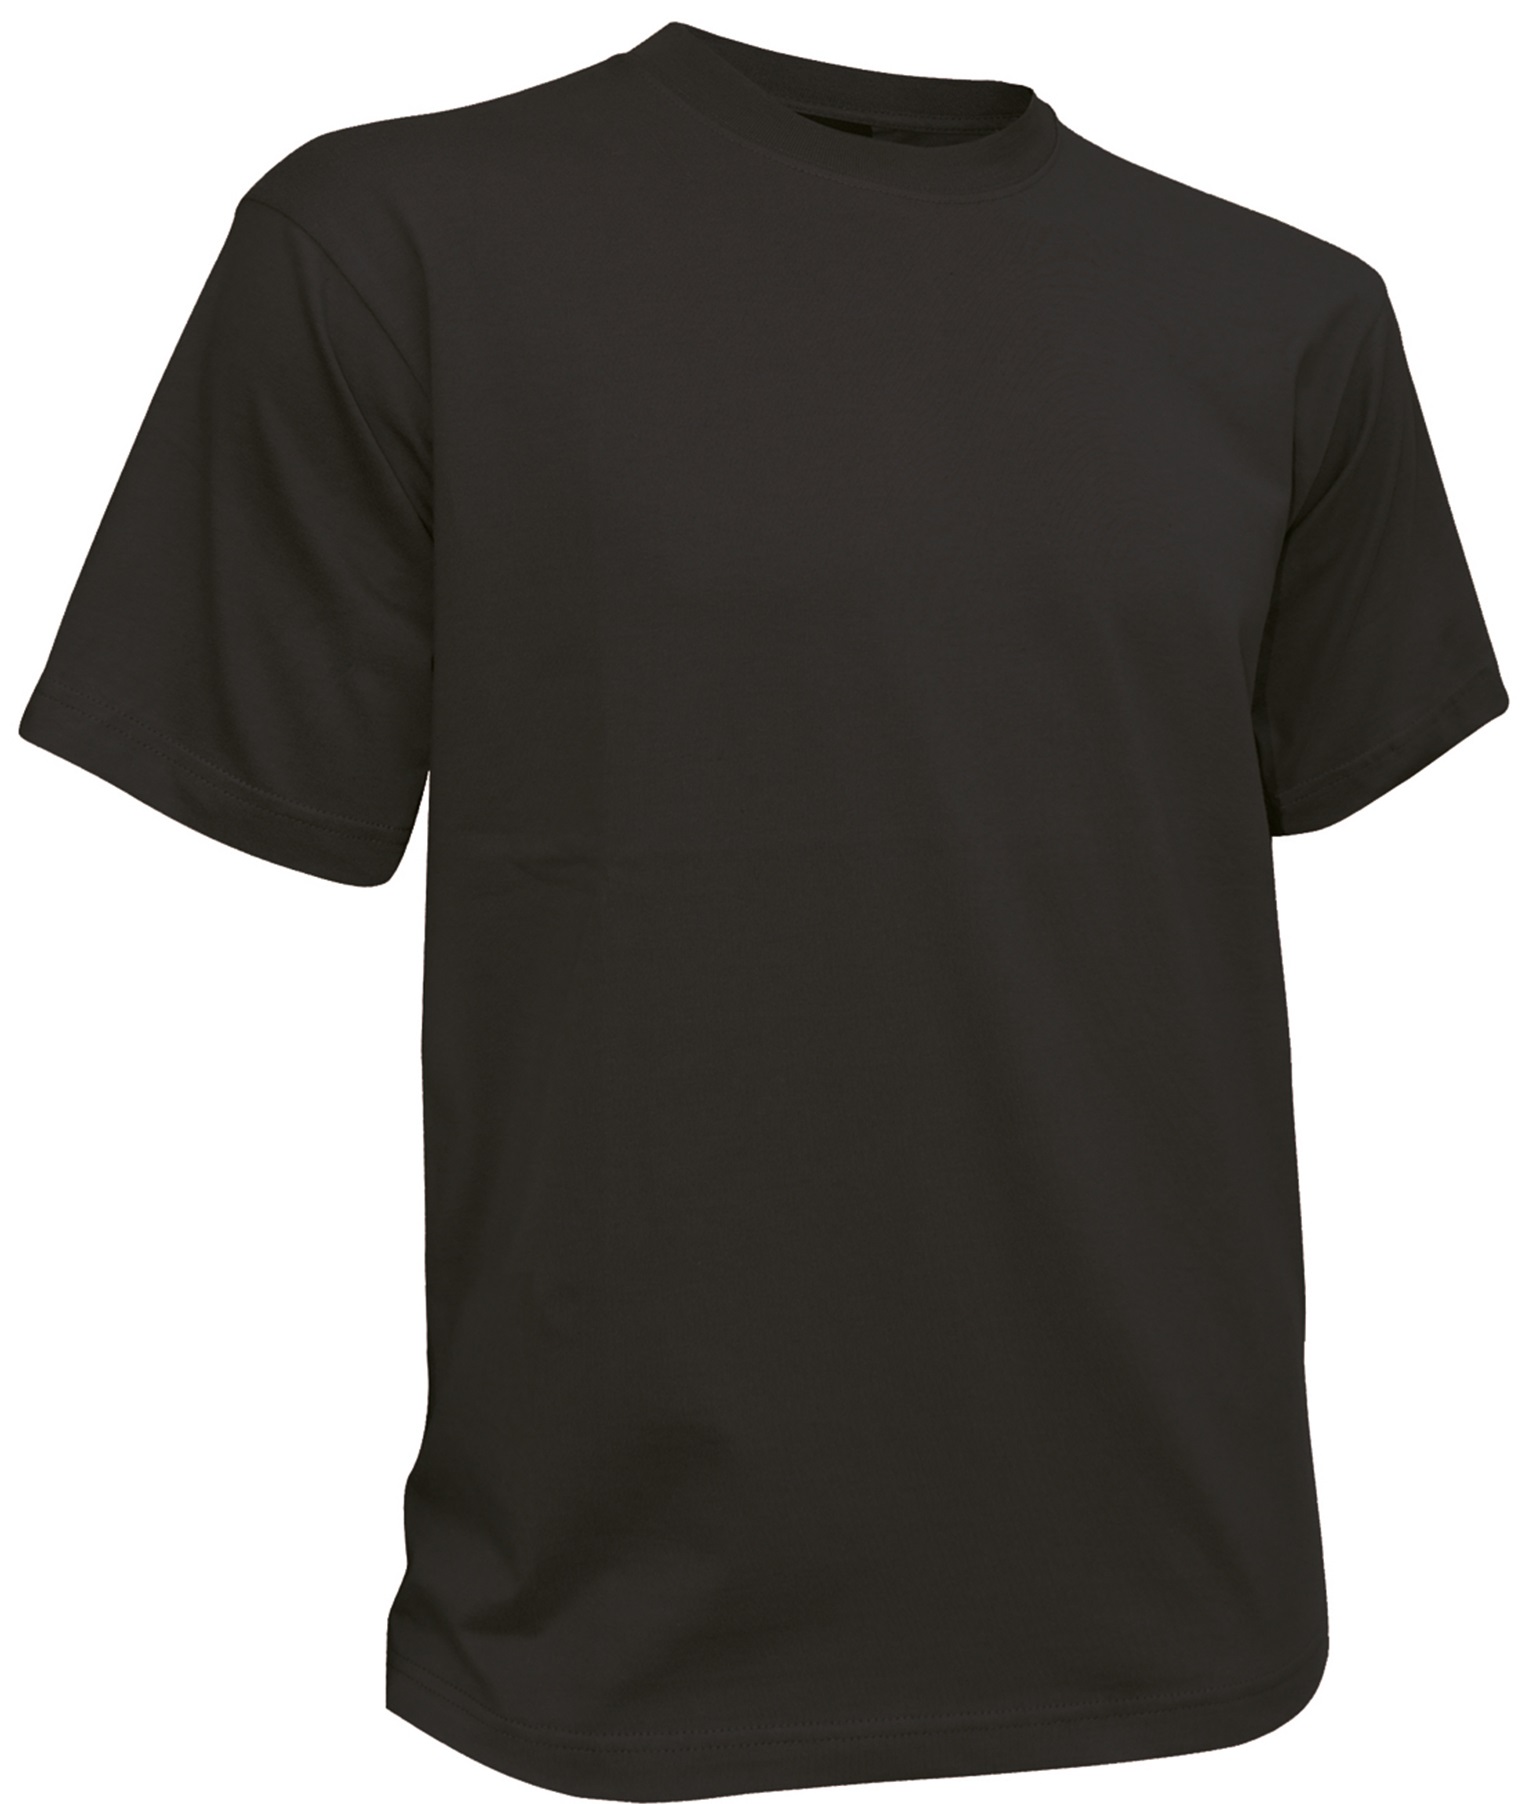 DASSY Oscar Arbeits-T-Shirt für das Teamoutfit